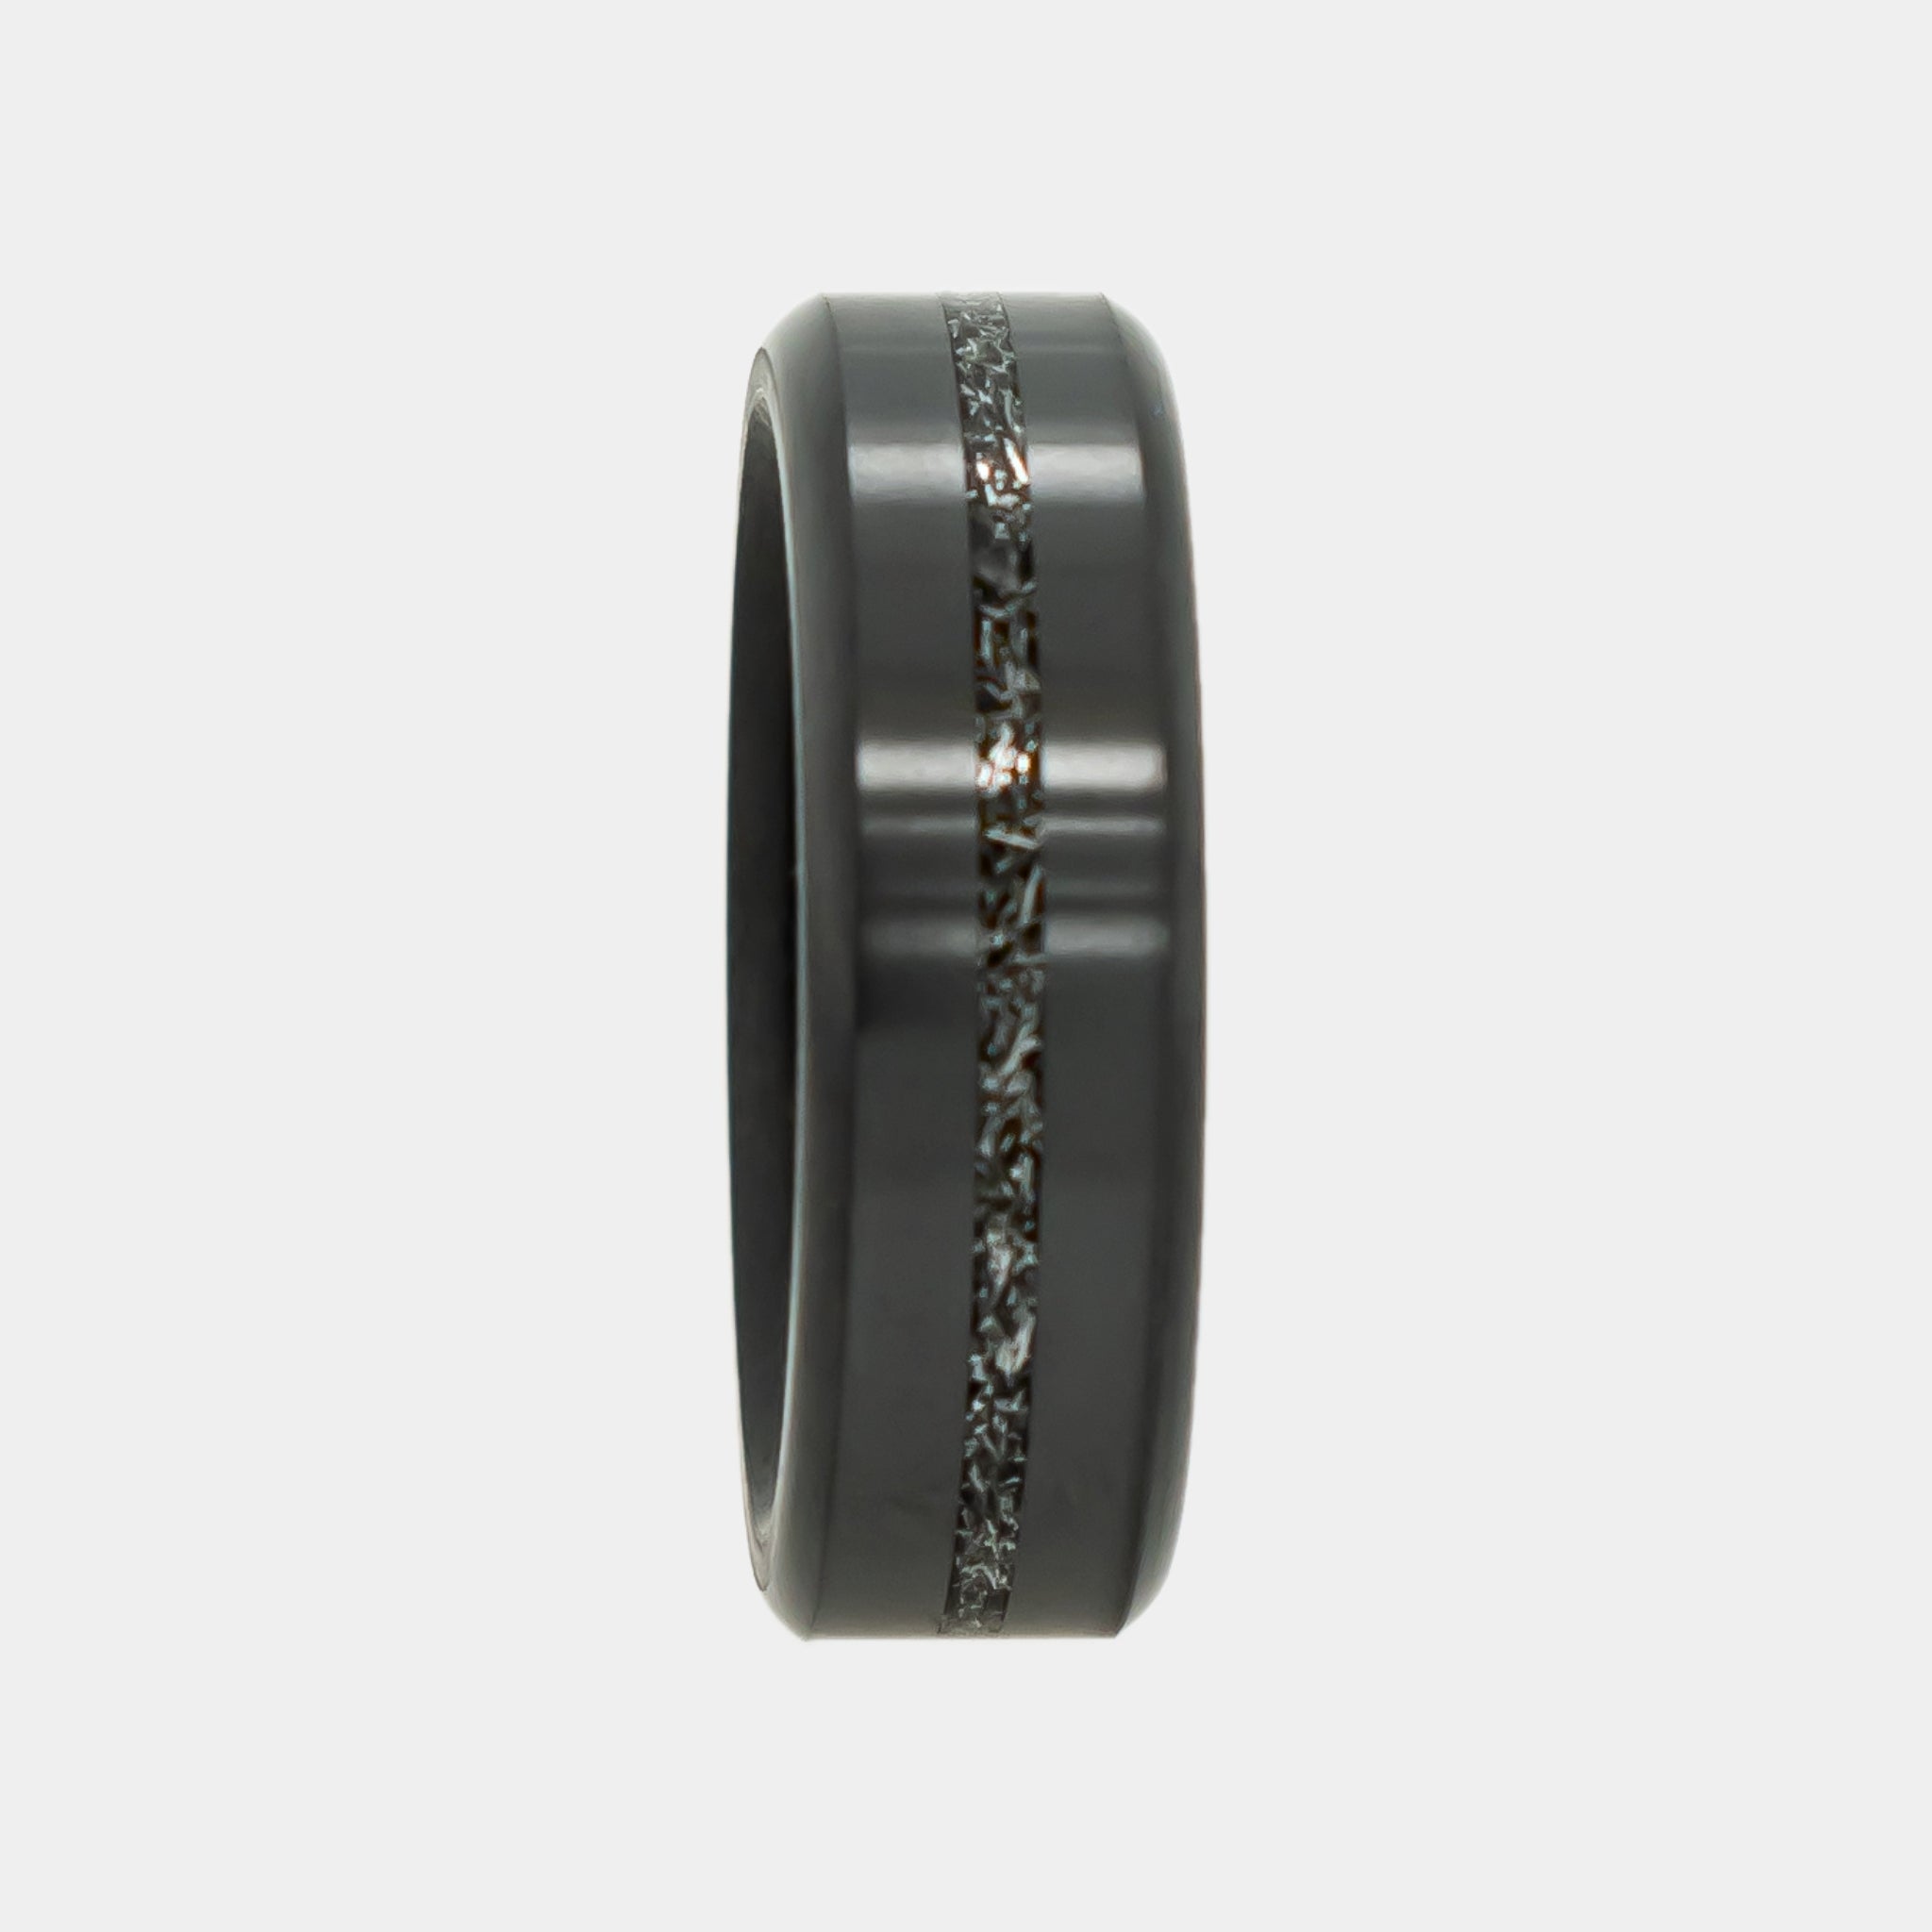 Black Diamond - Men’s Ring 7mm - Authentic Muonionalausta Meteorite Inlay - ARES - Elysium Black Diamond